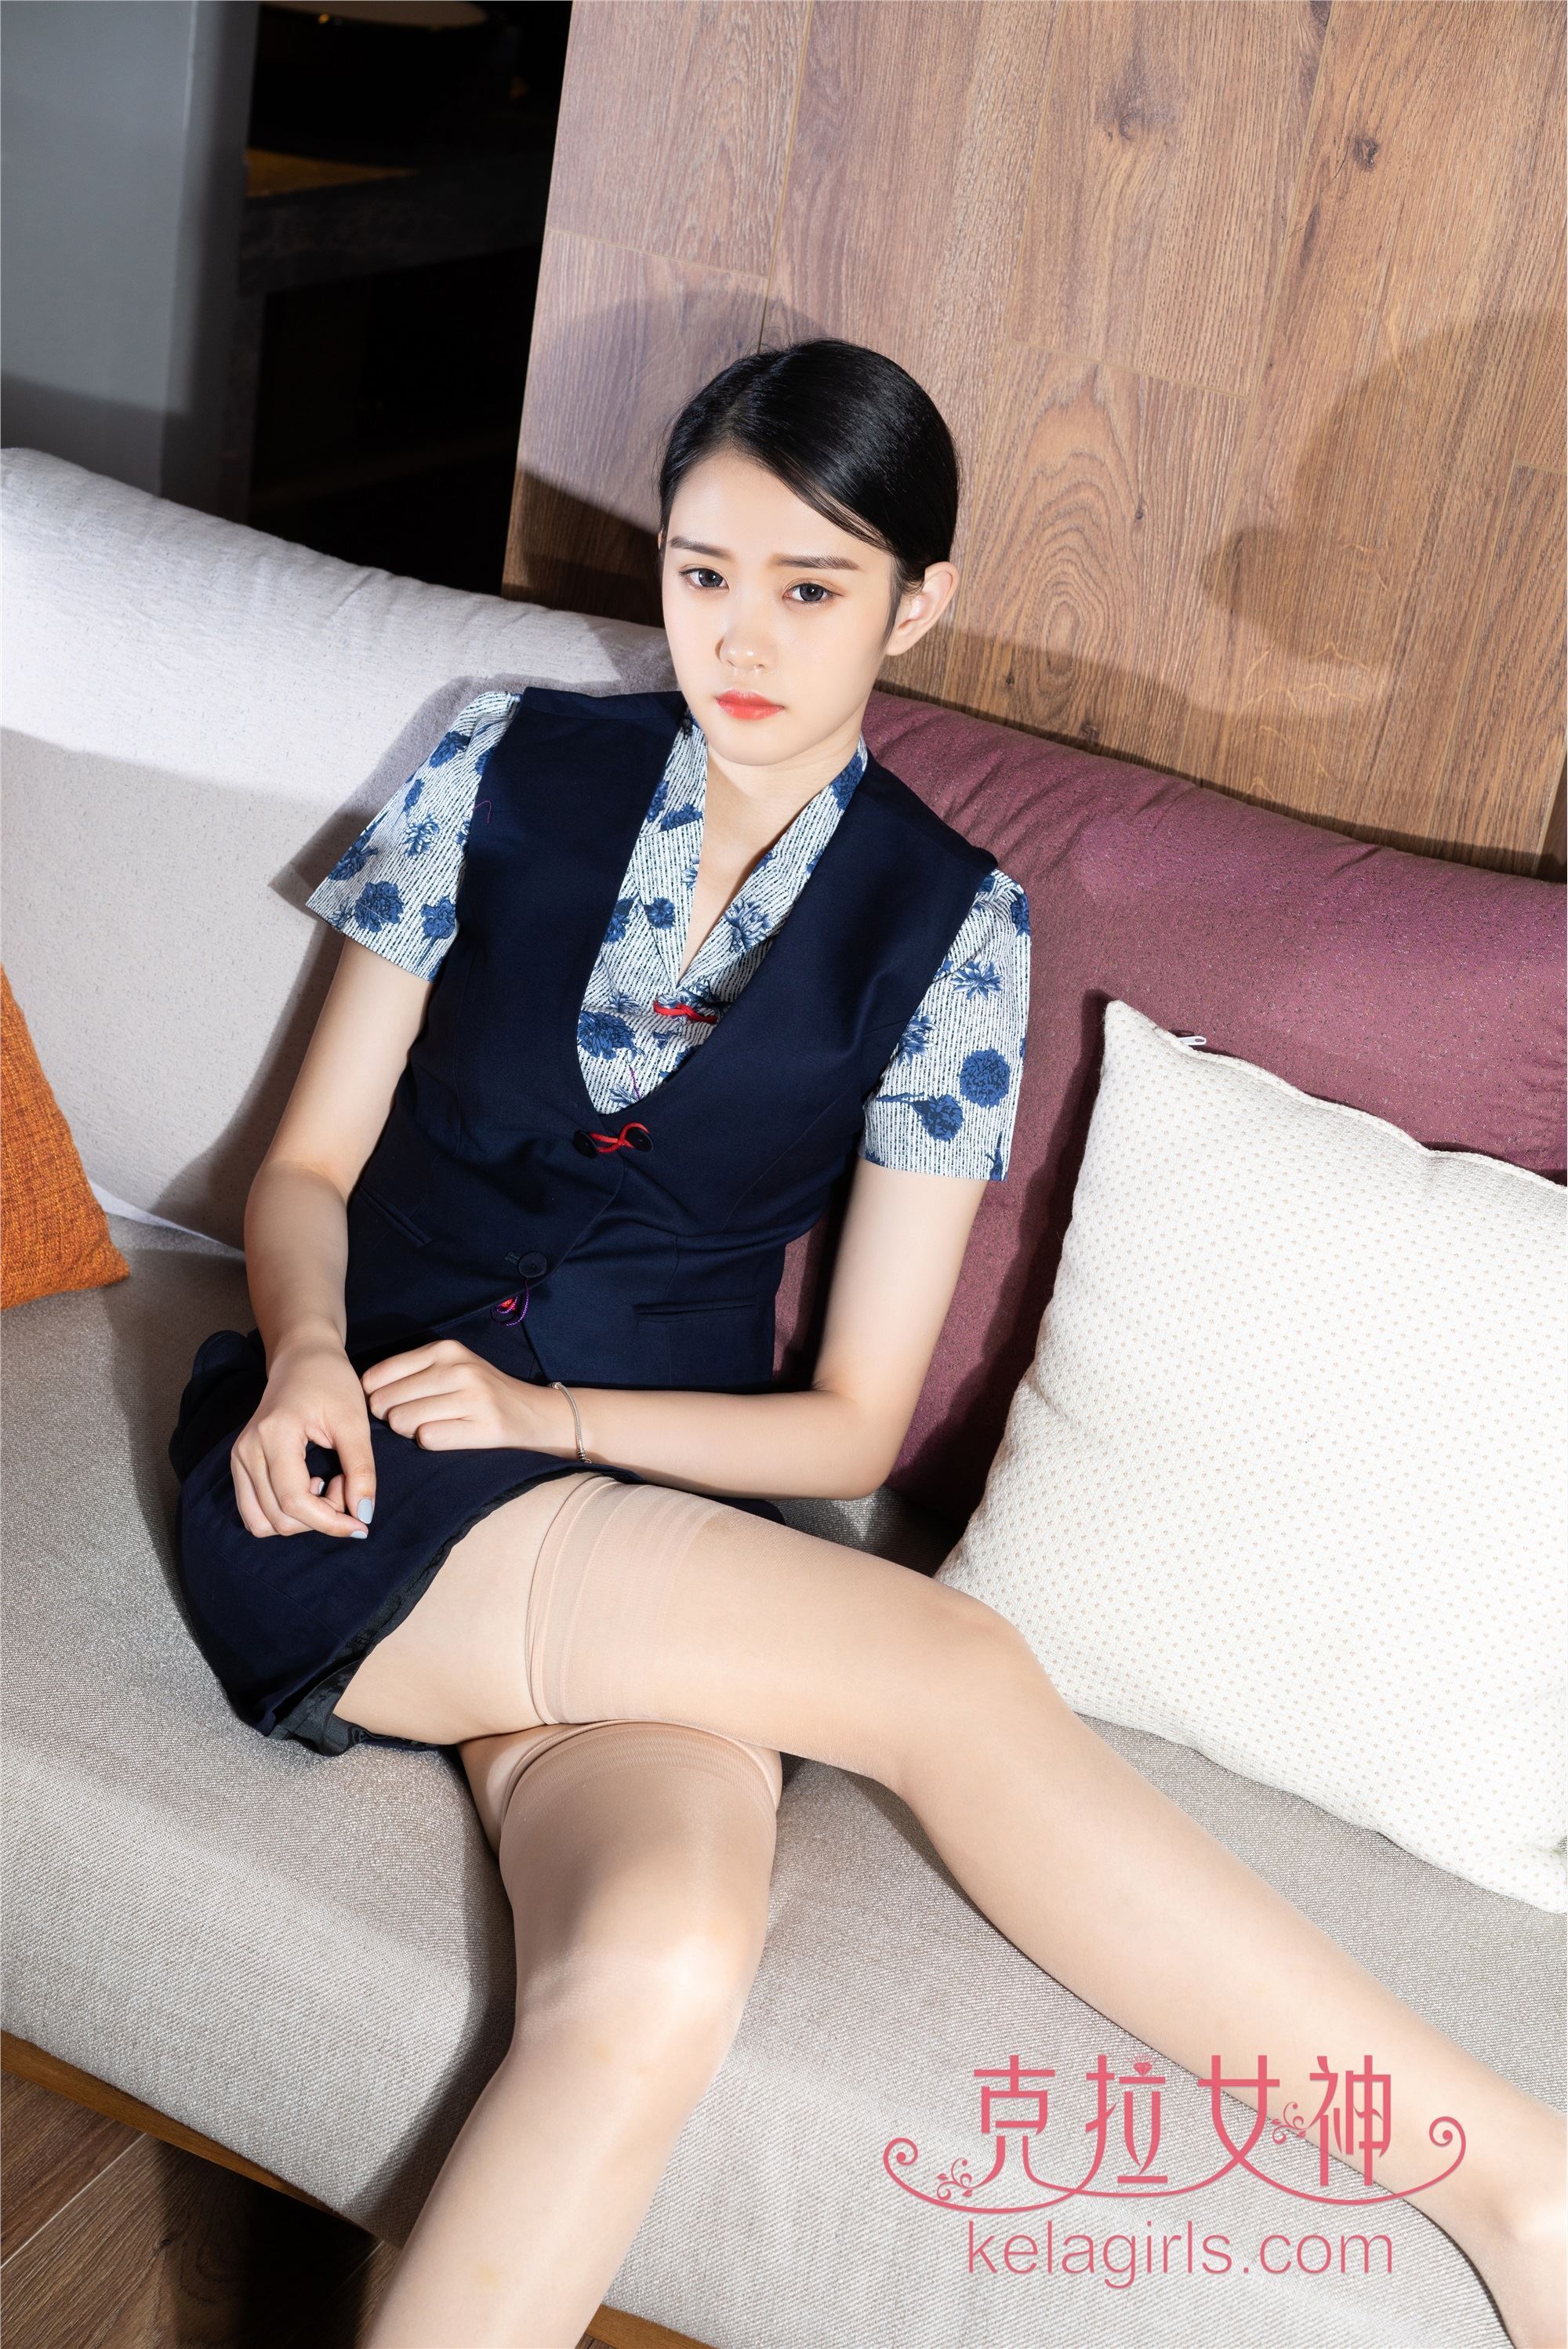 Kela girls: the most beautiful stewardess on May 15, 2020